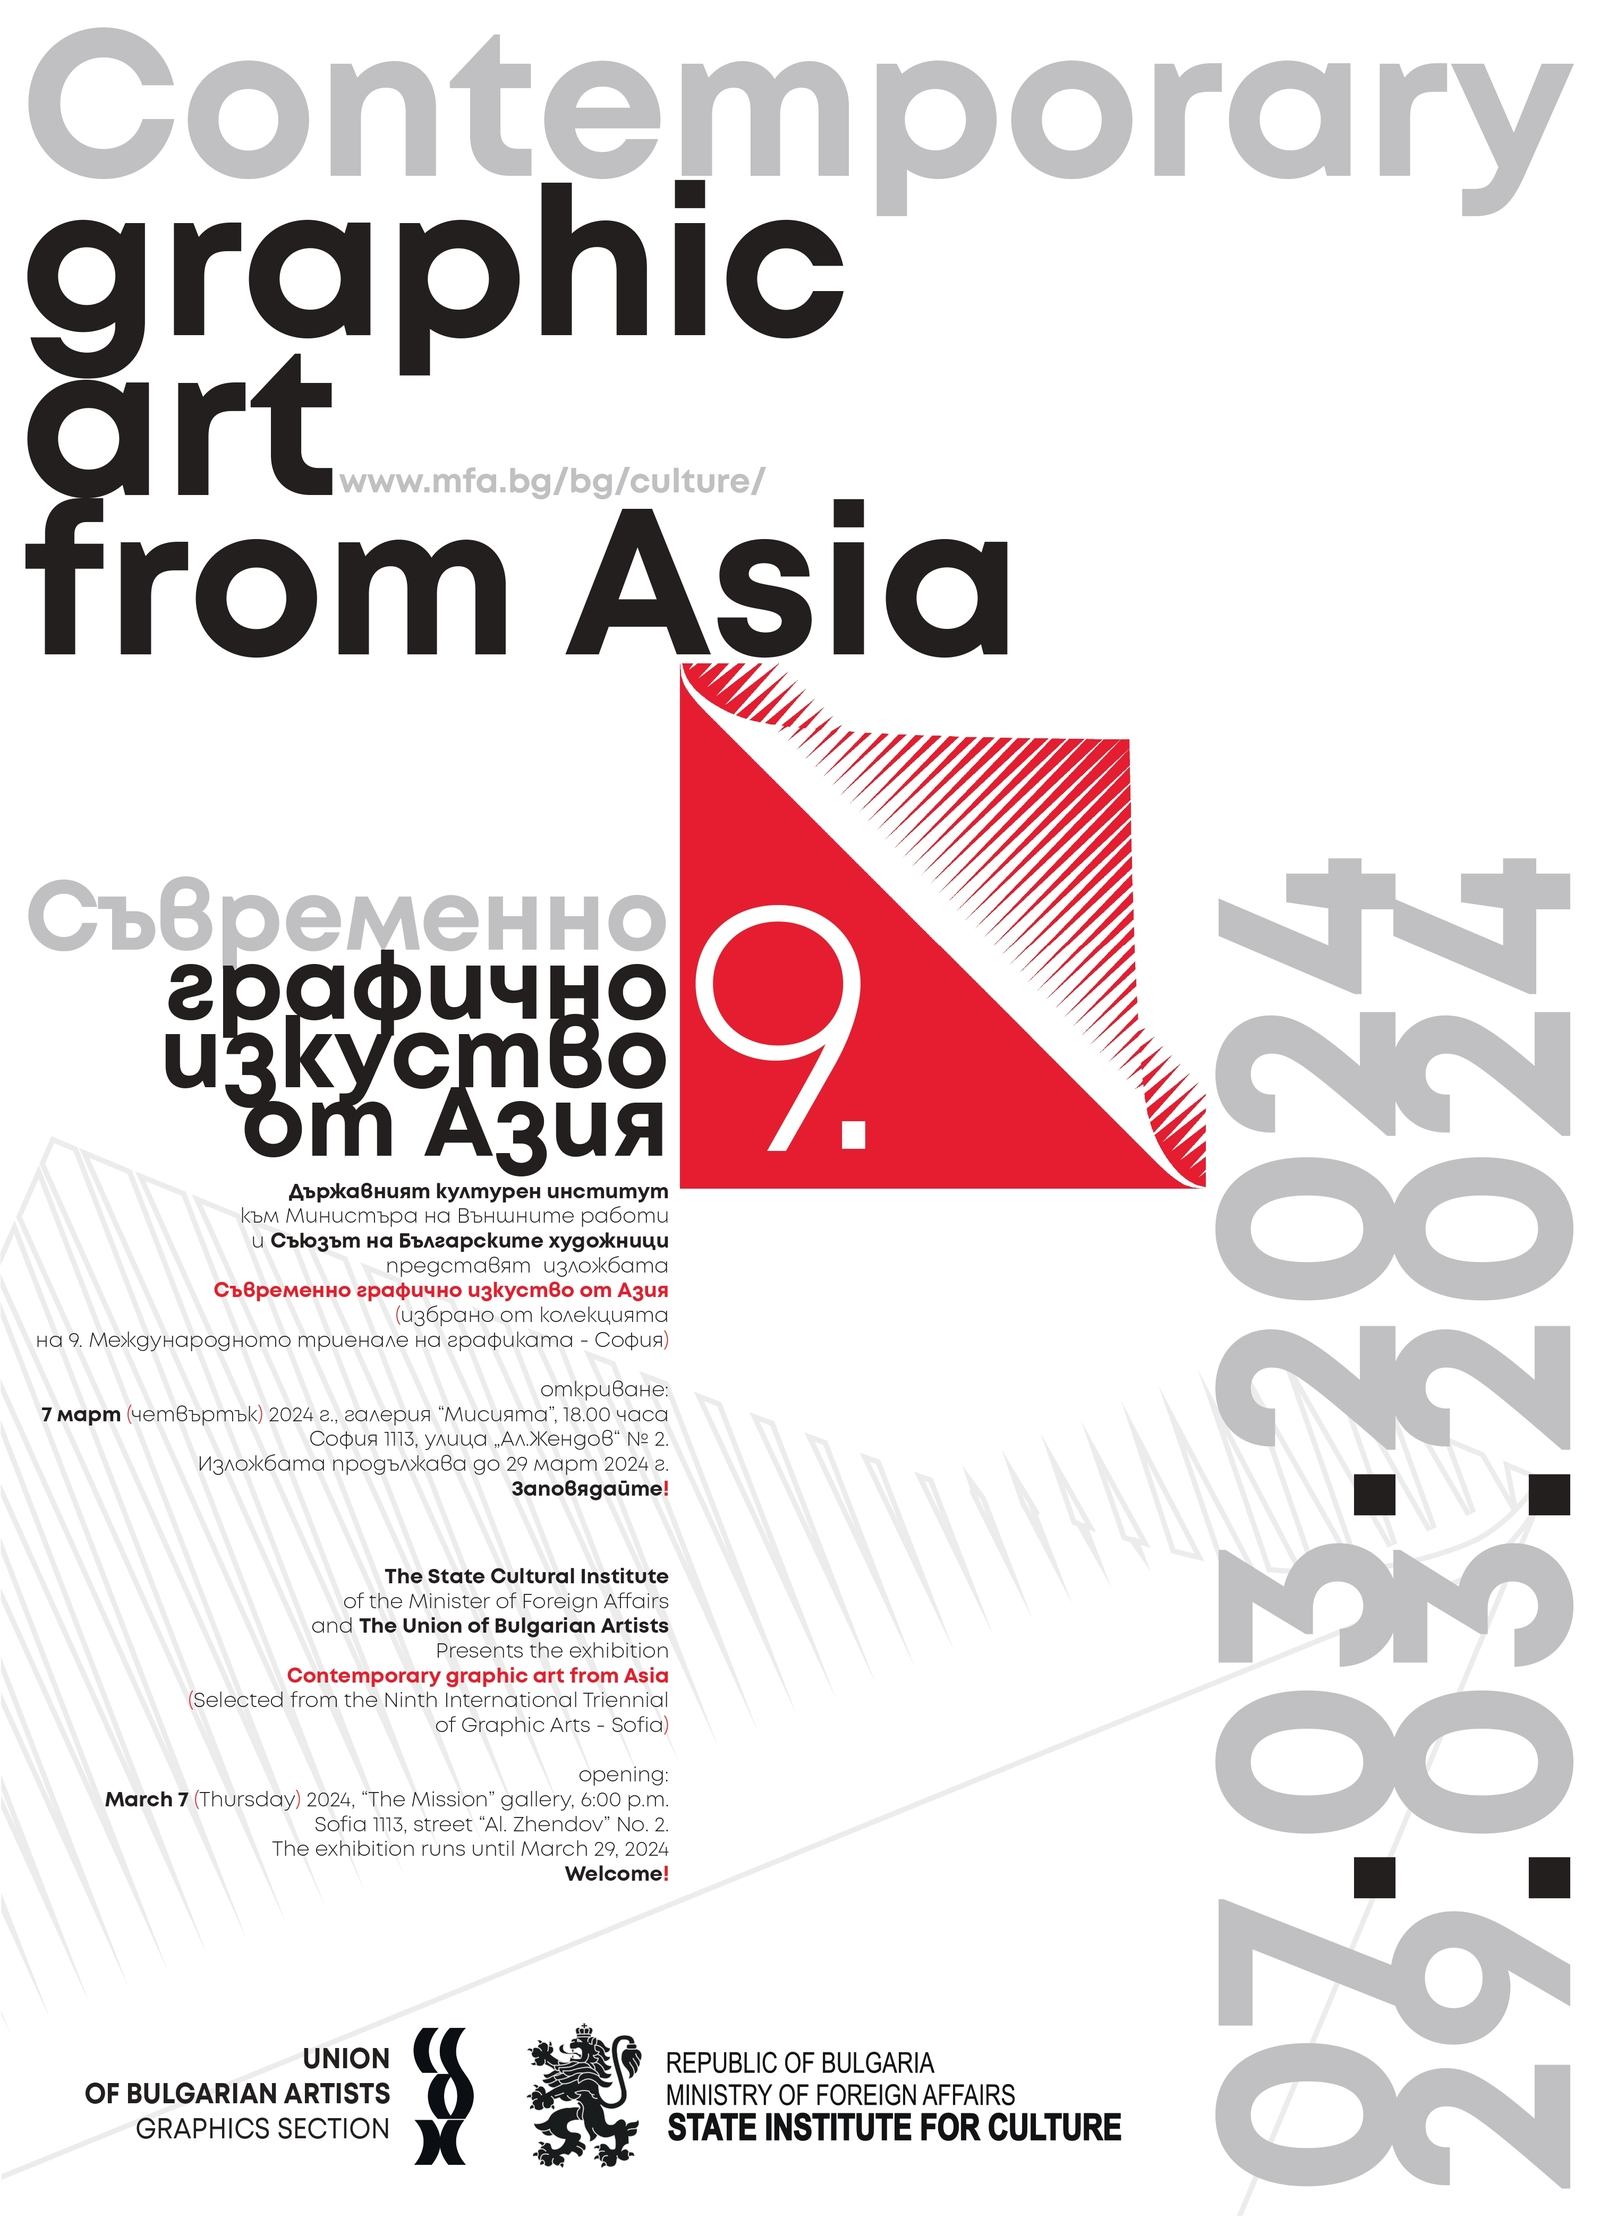 "Съвременно графично изкуство от Азия" гостува от 7 март в галерия "Мисията"